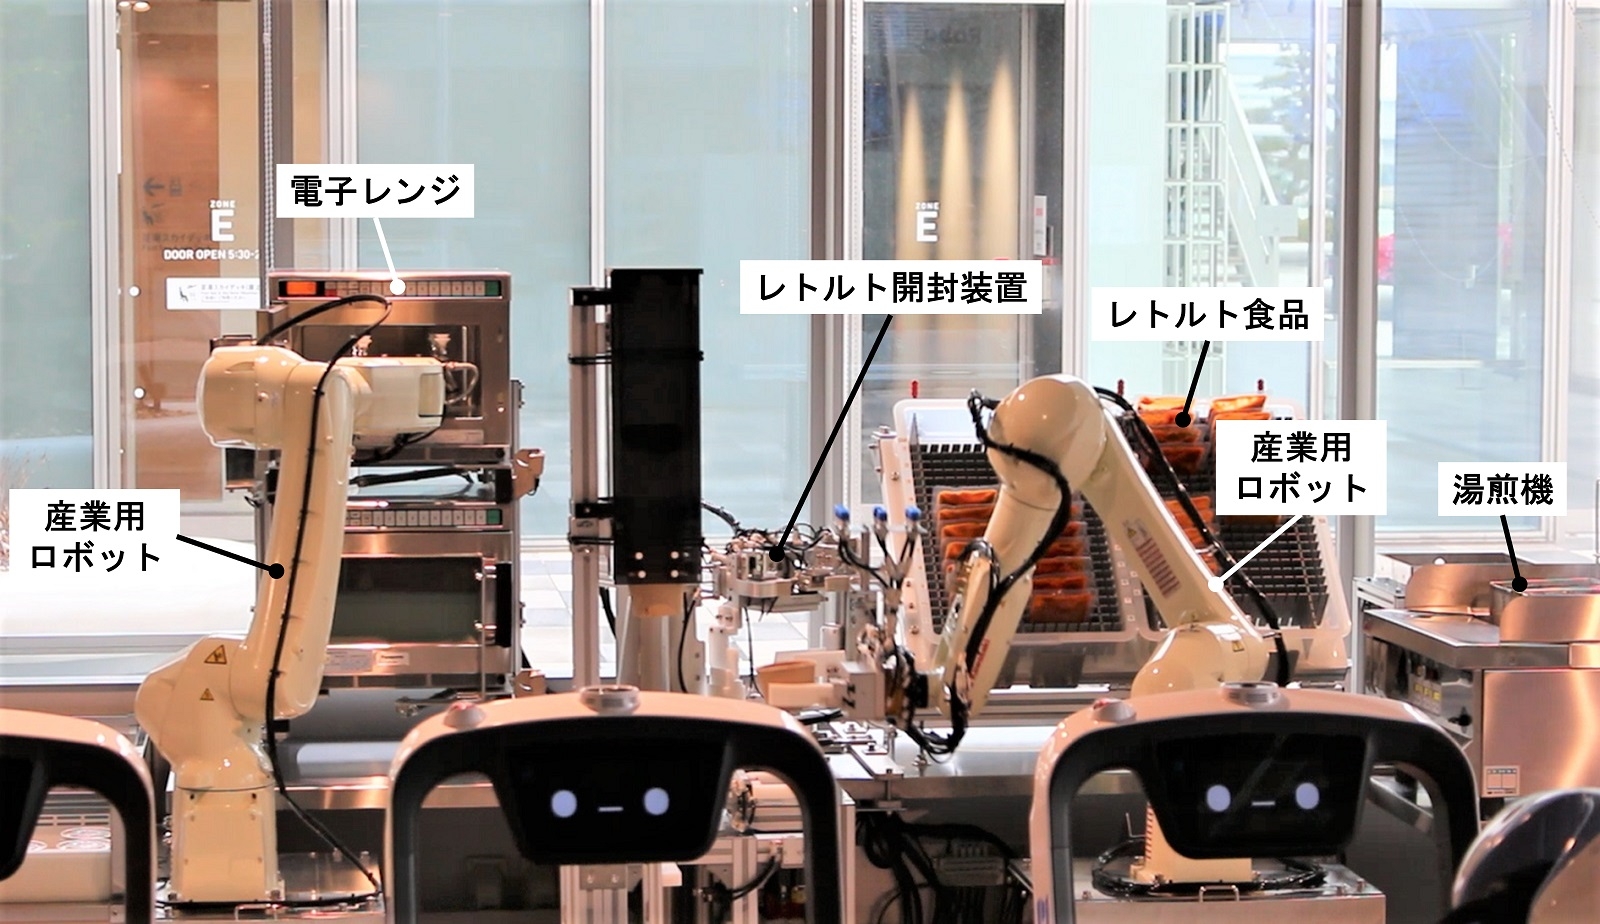 図2　ロボットが料理を準備する様子 左のロボットは、あらかじめ調理された料理を電子レンジで加熱してトレーに載せる。右のロボットは、レトルト食品を湯煎し、レトルト食品を開封する別の装置にセットする。その後、容器に移されたレトルト食品を右のロボットがトレーに載せる。（出所：日経クロステック）